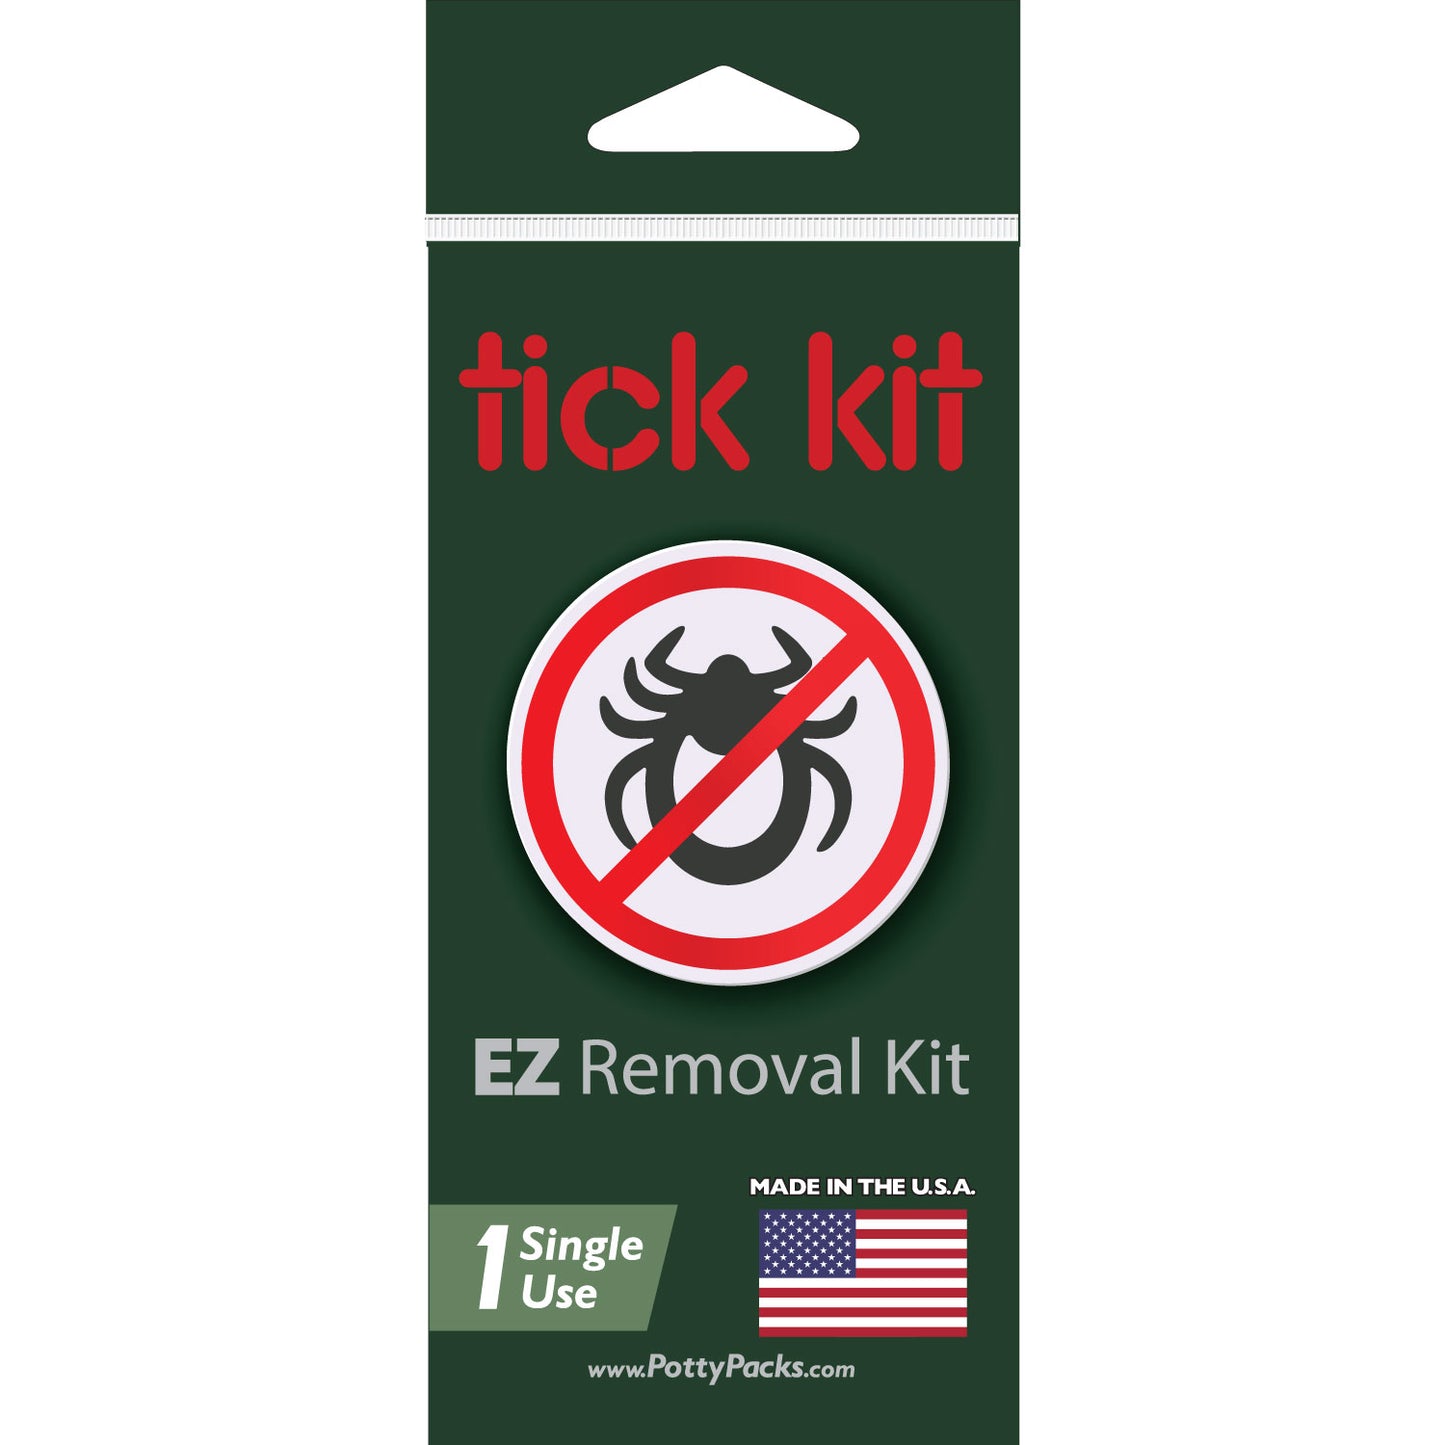 Tick Kit